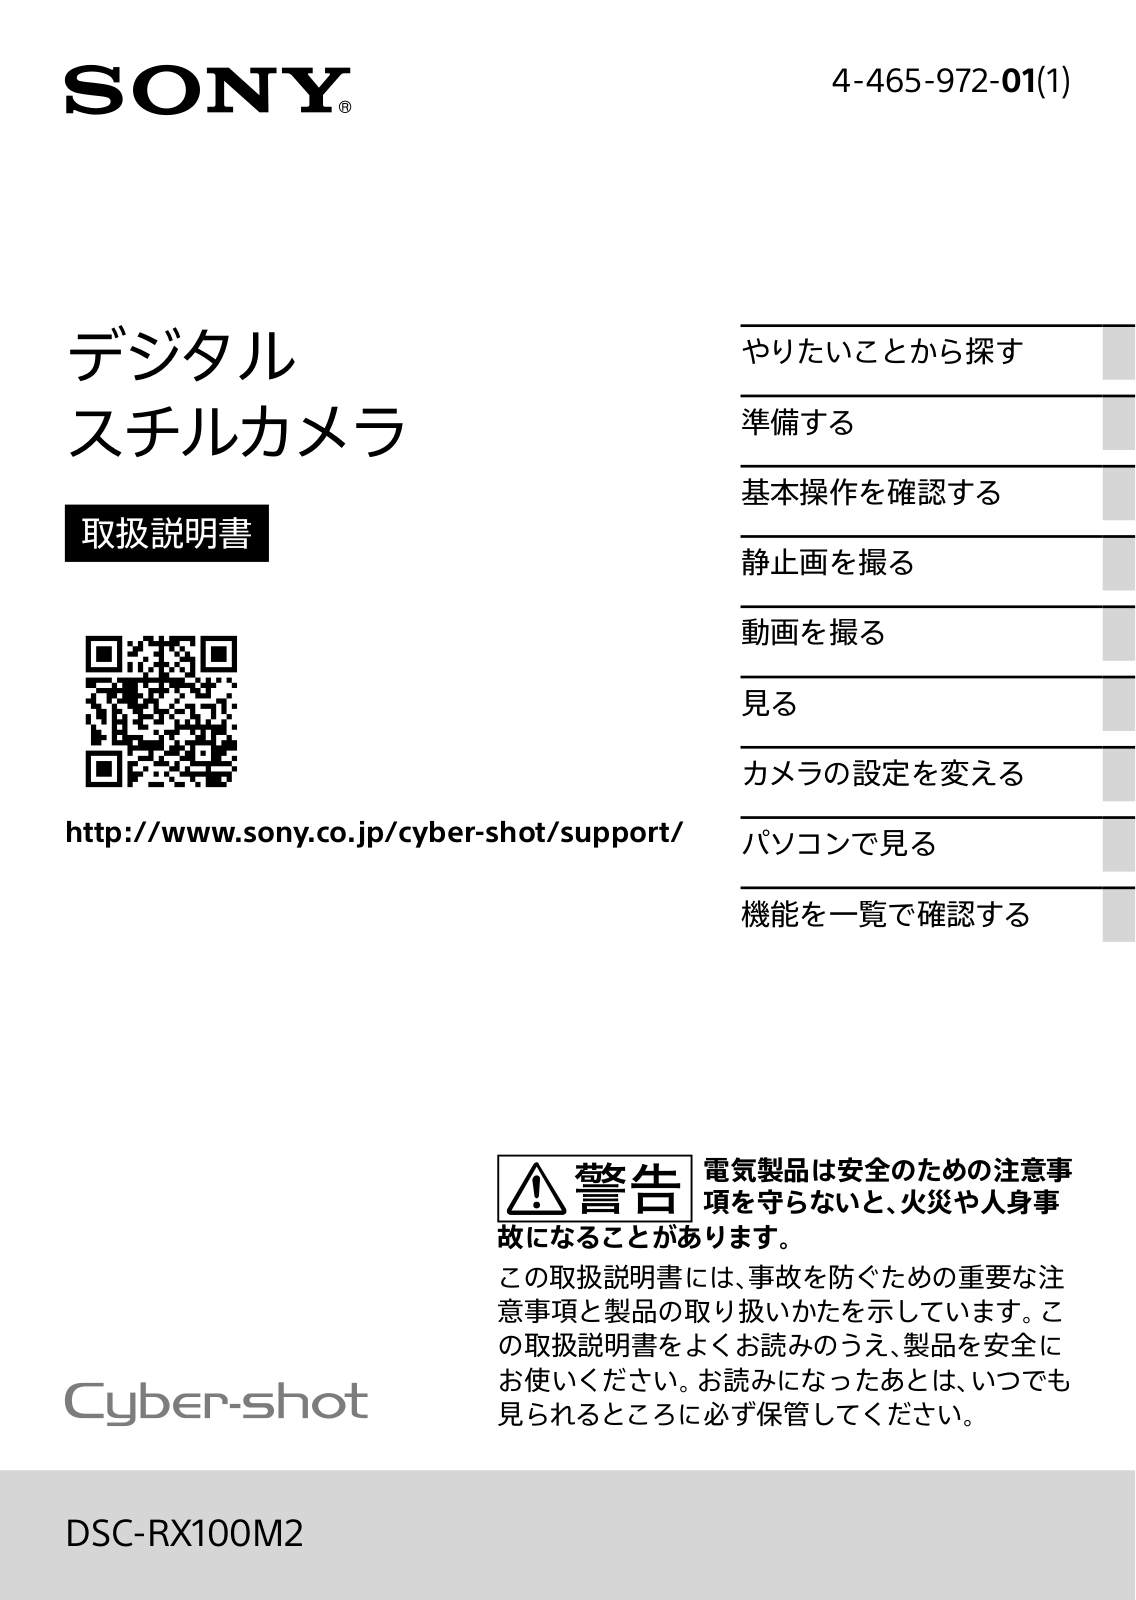 Sony CYBER-SHOT DSC-RX100M2 User Manual